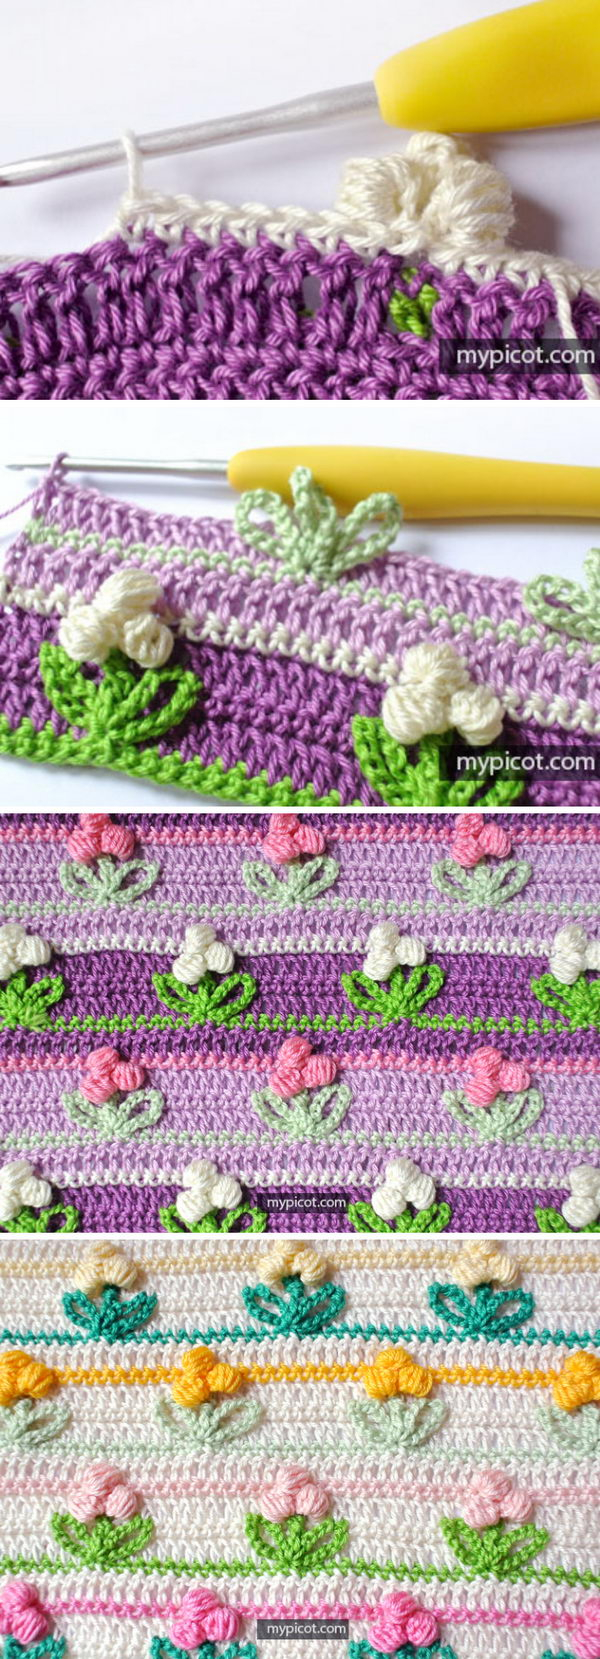 Crochet Stitches Patterns 15 Crochet Flower Stitch Patterns And Tutorials 2017